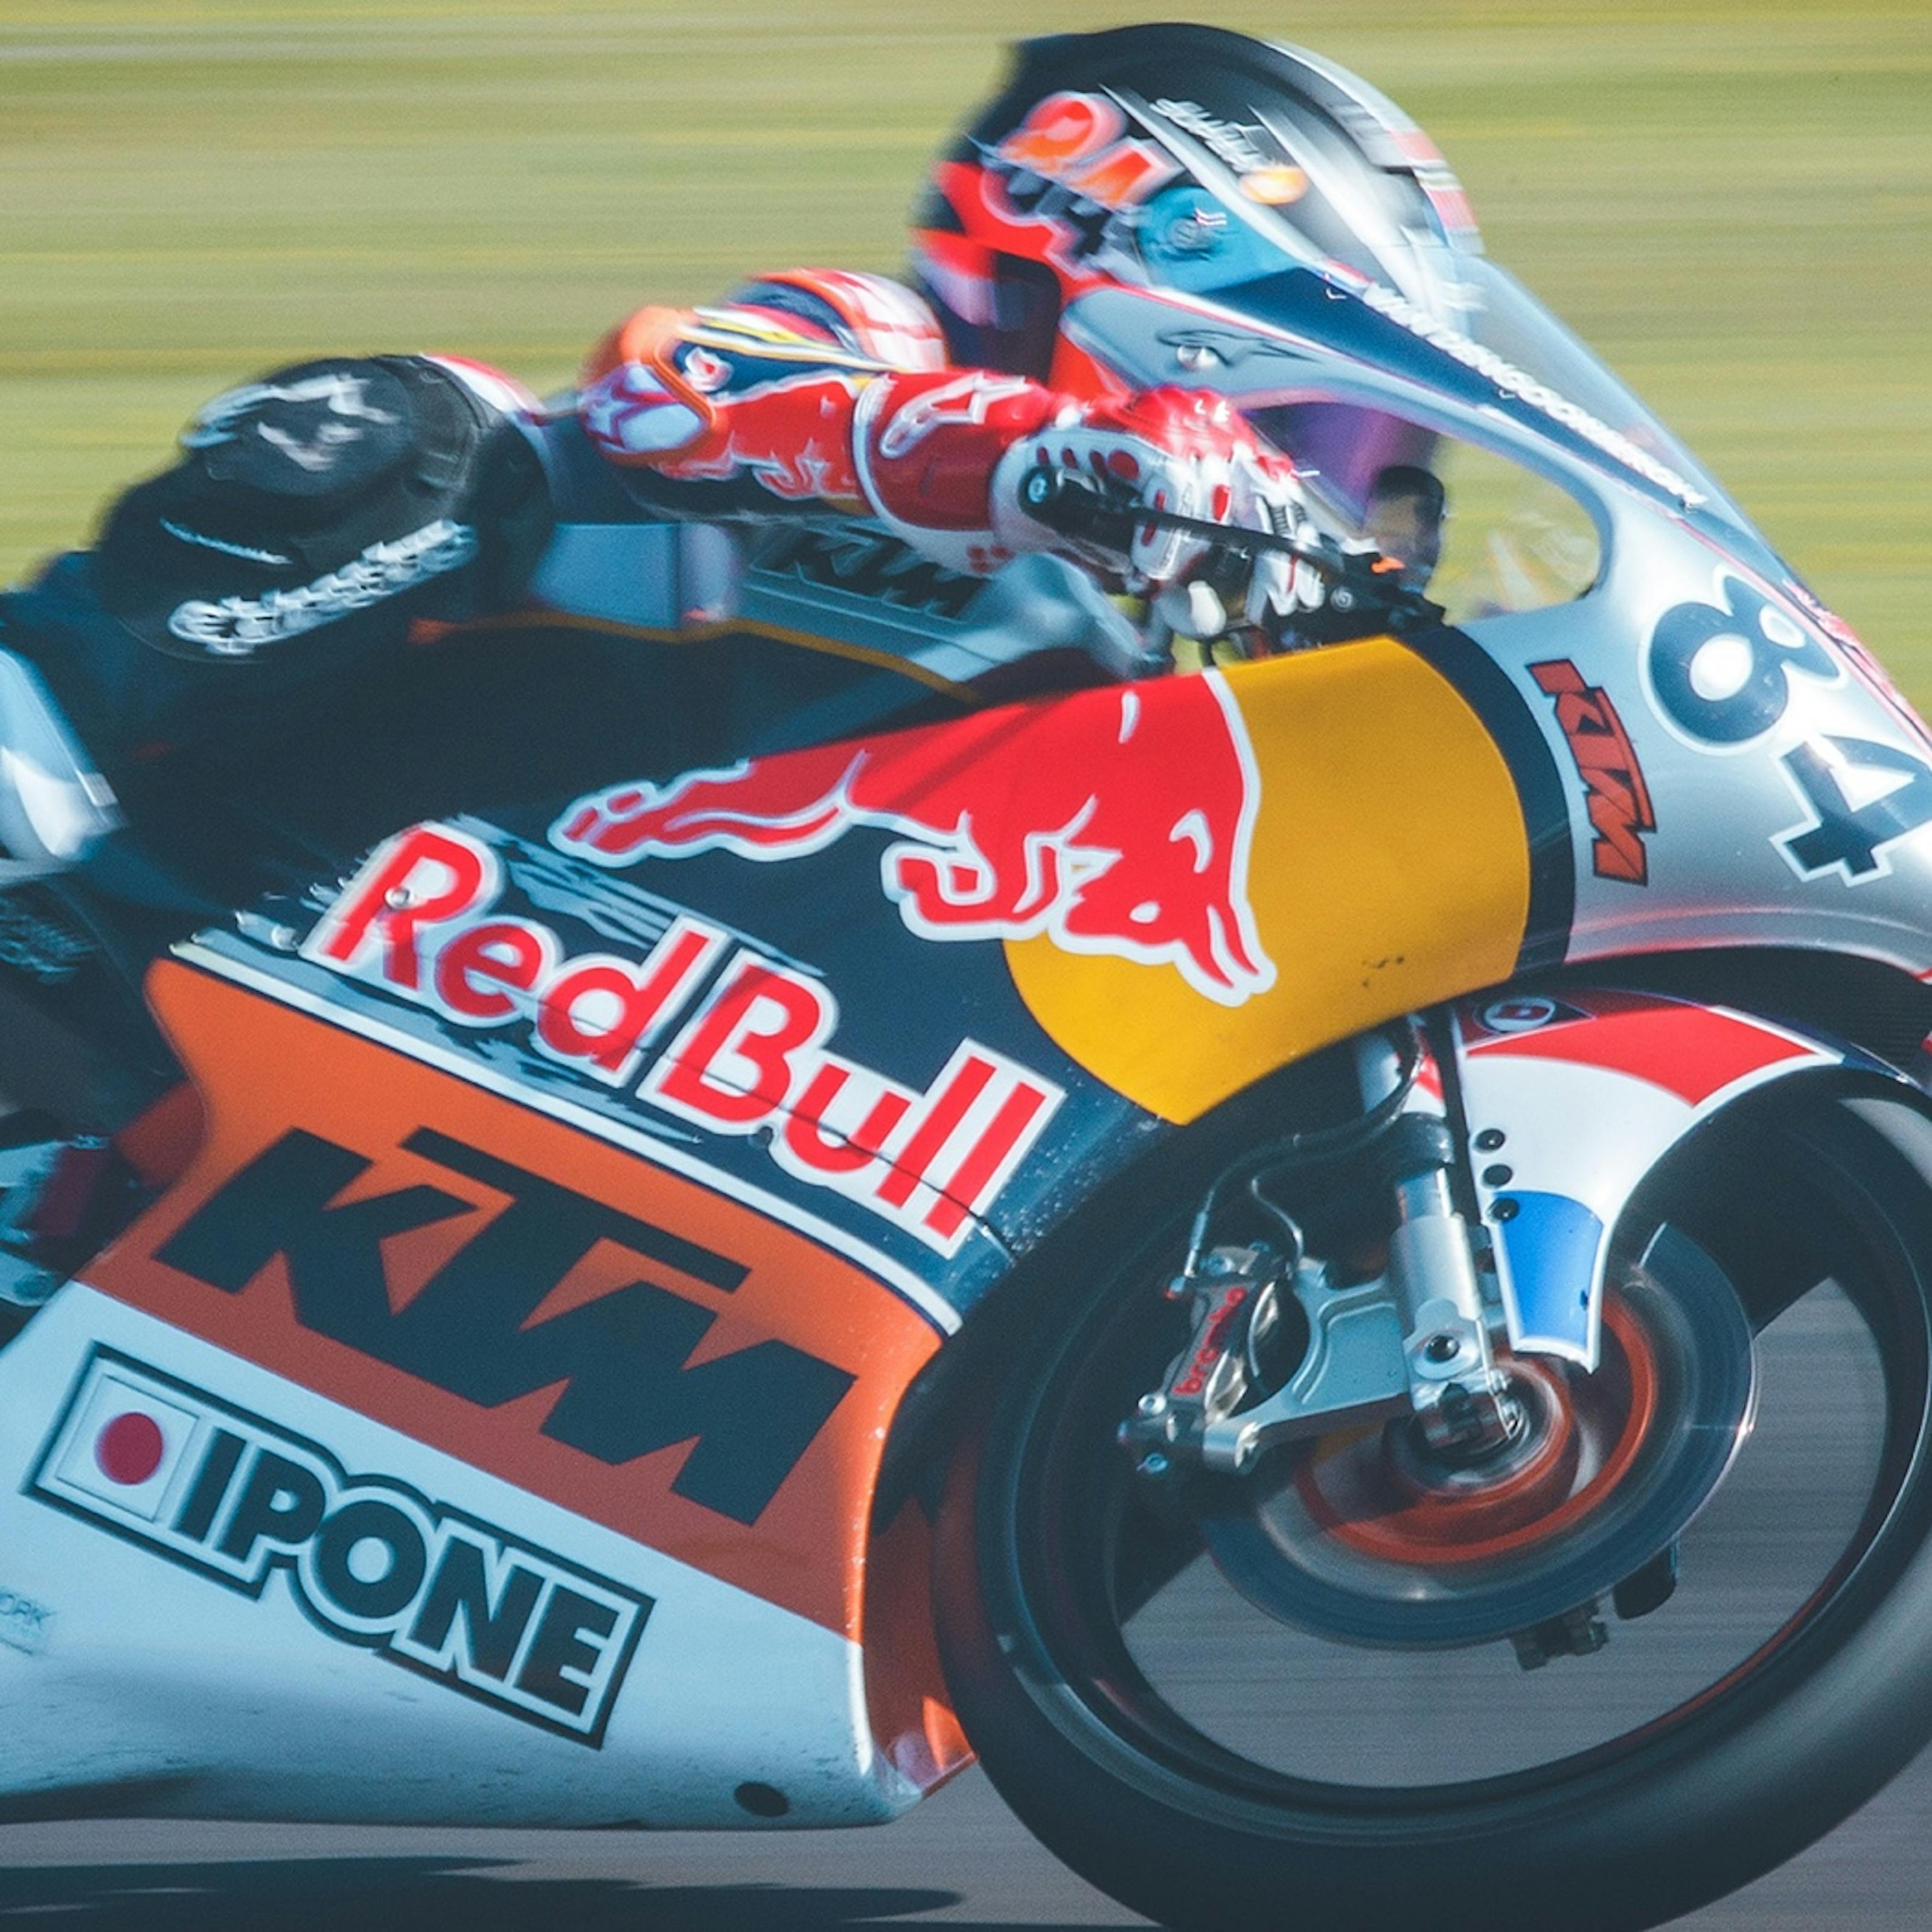 MotoGP  Red Bull